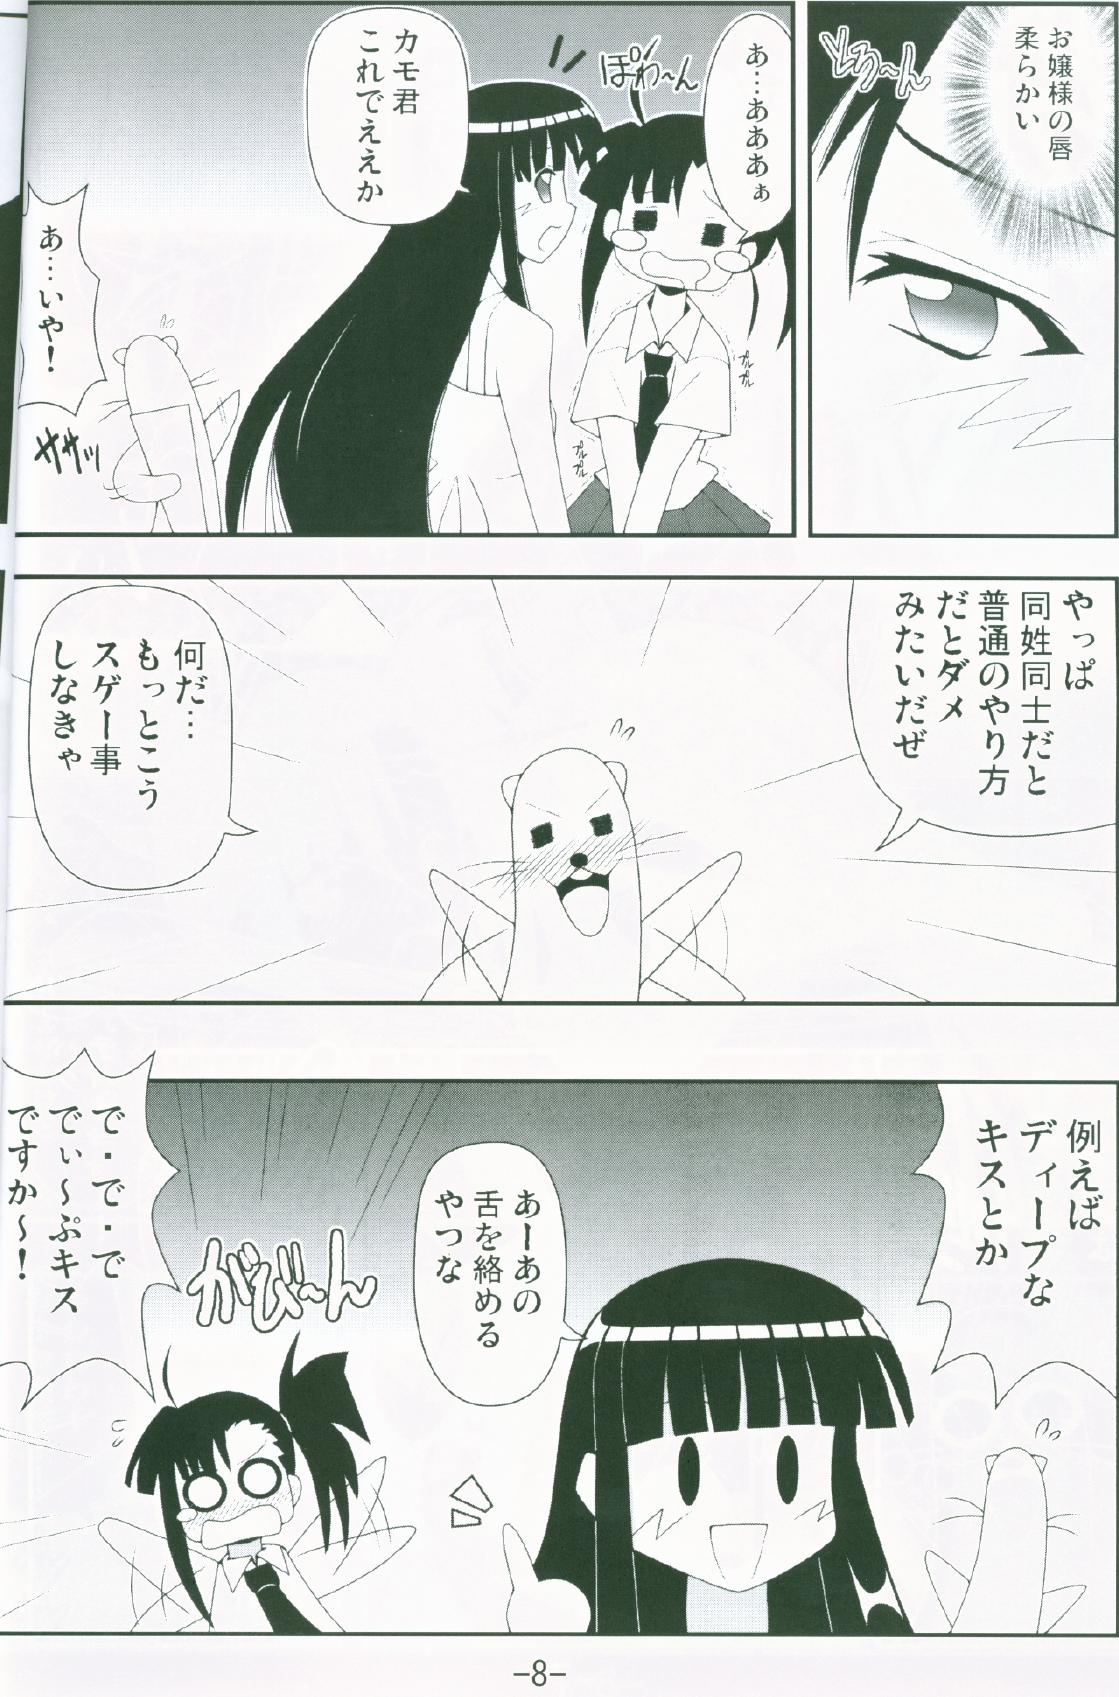 Funny Gurimaga ~ Yamato Shiko - Mahou sensei negima Blacks - Page 6